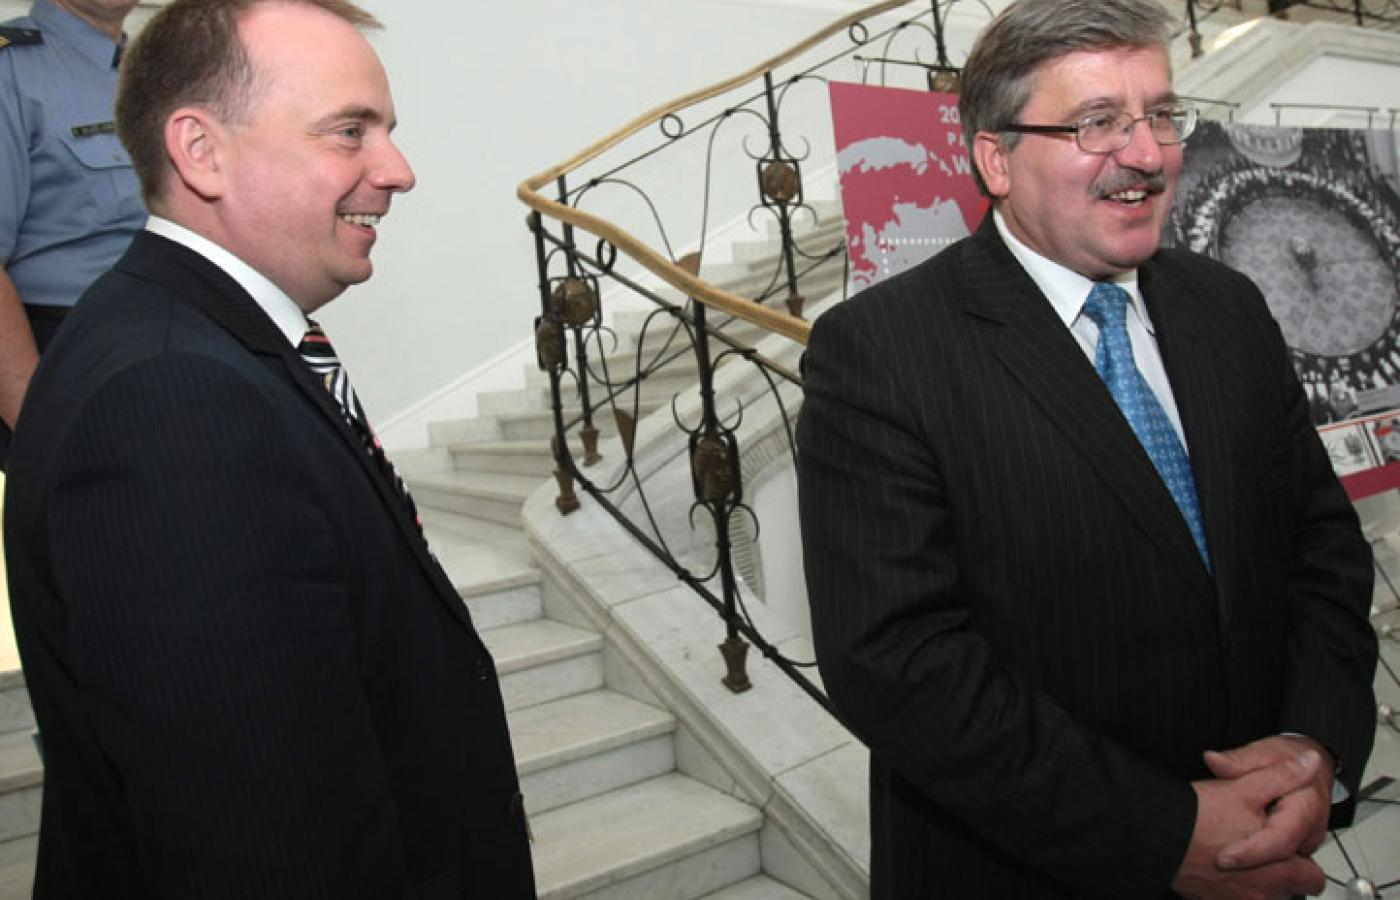 Jerzy Smoliński i Bronisław Komorowski w Sejmie, czerwiec 2009 r.